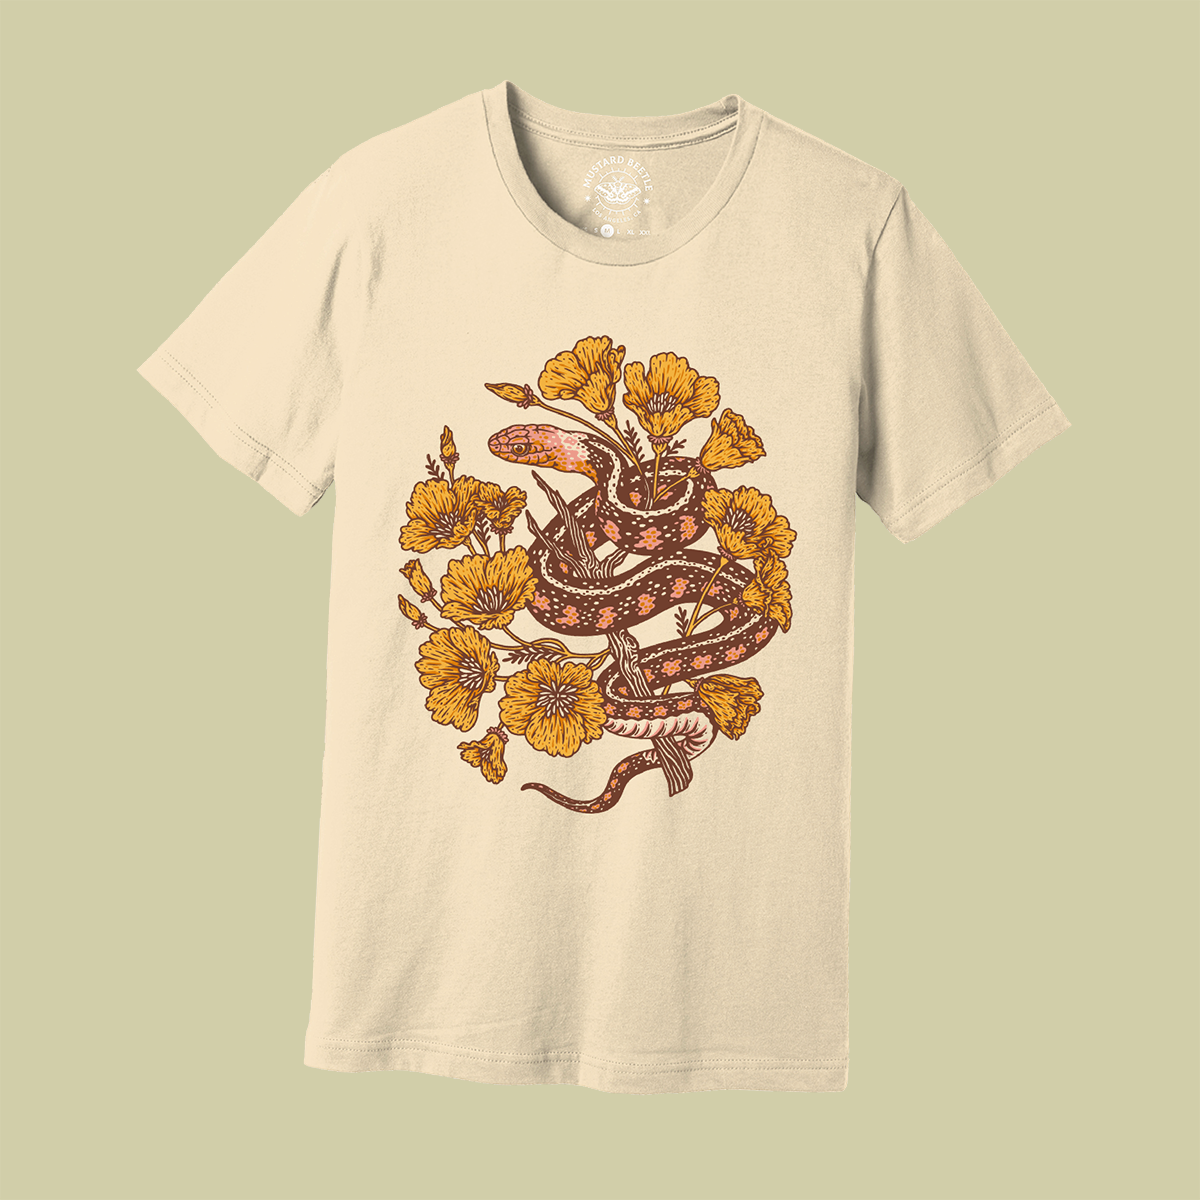 Screenprinted T-Shirt: Reptile